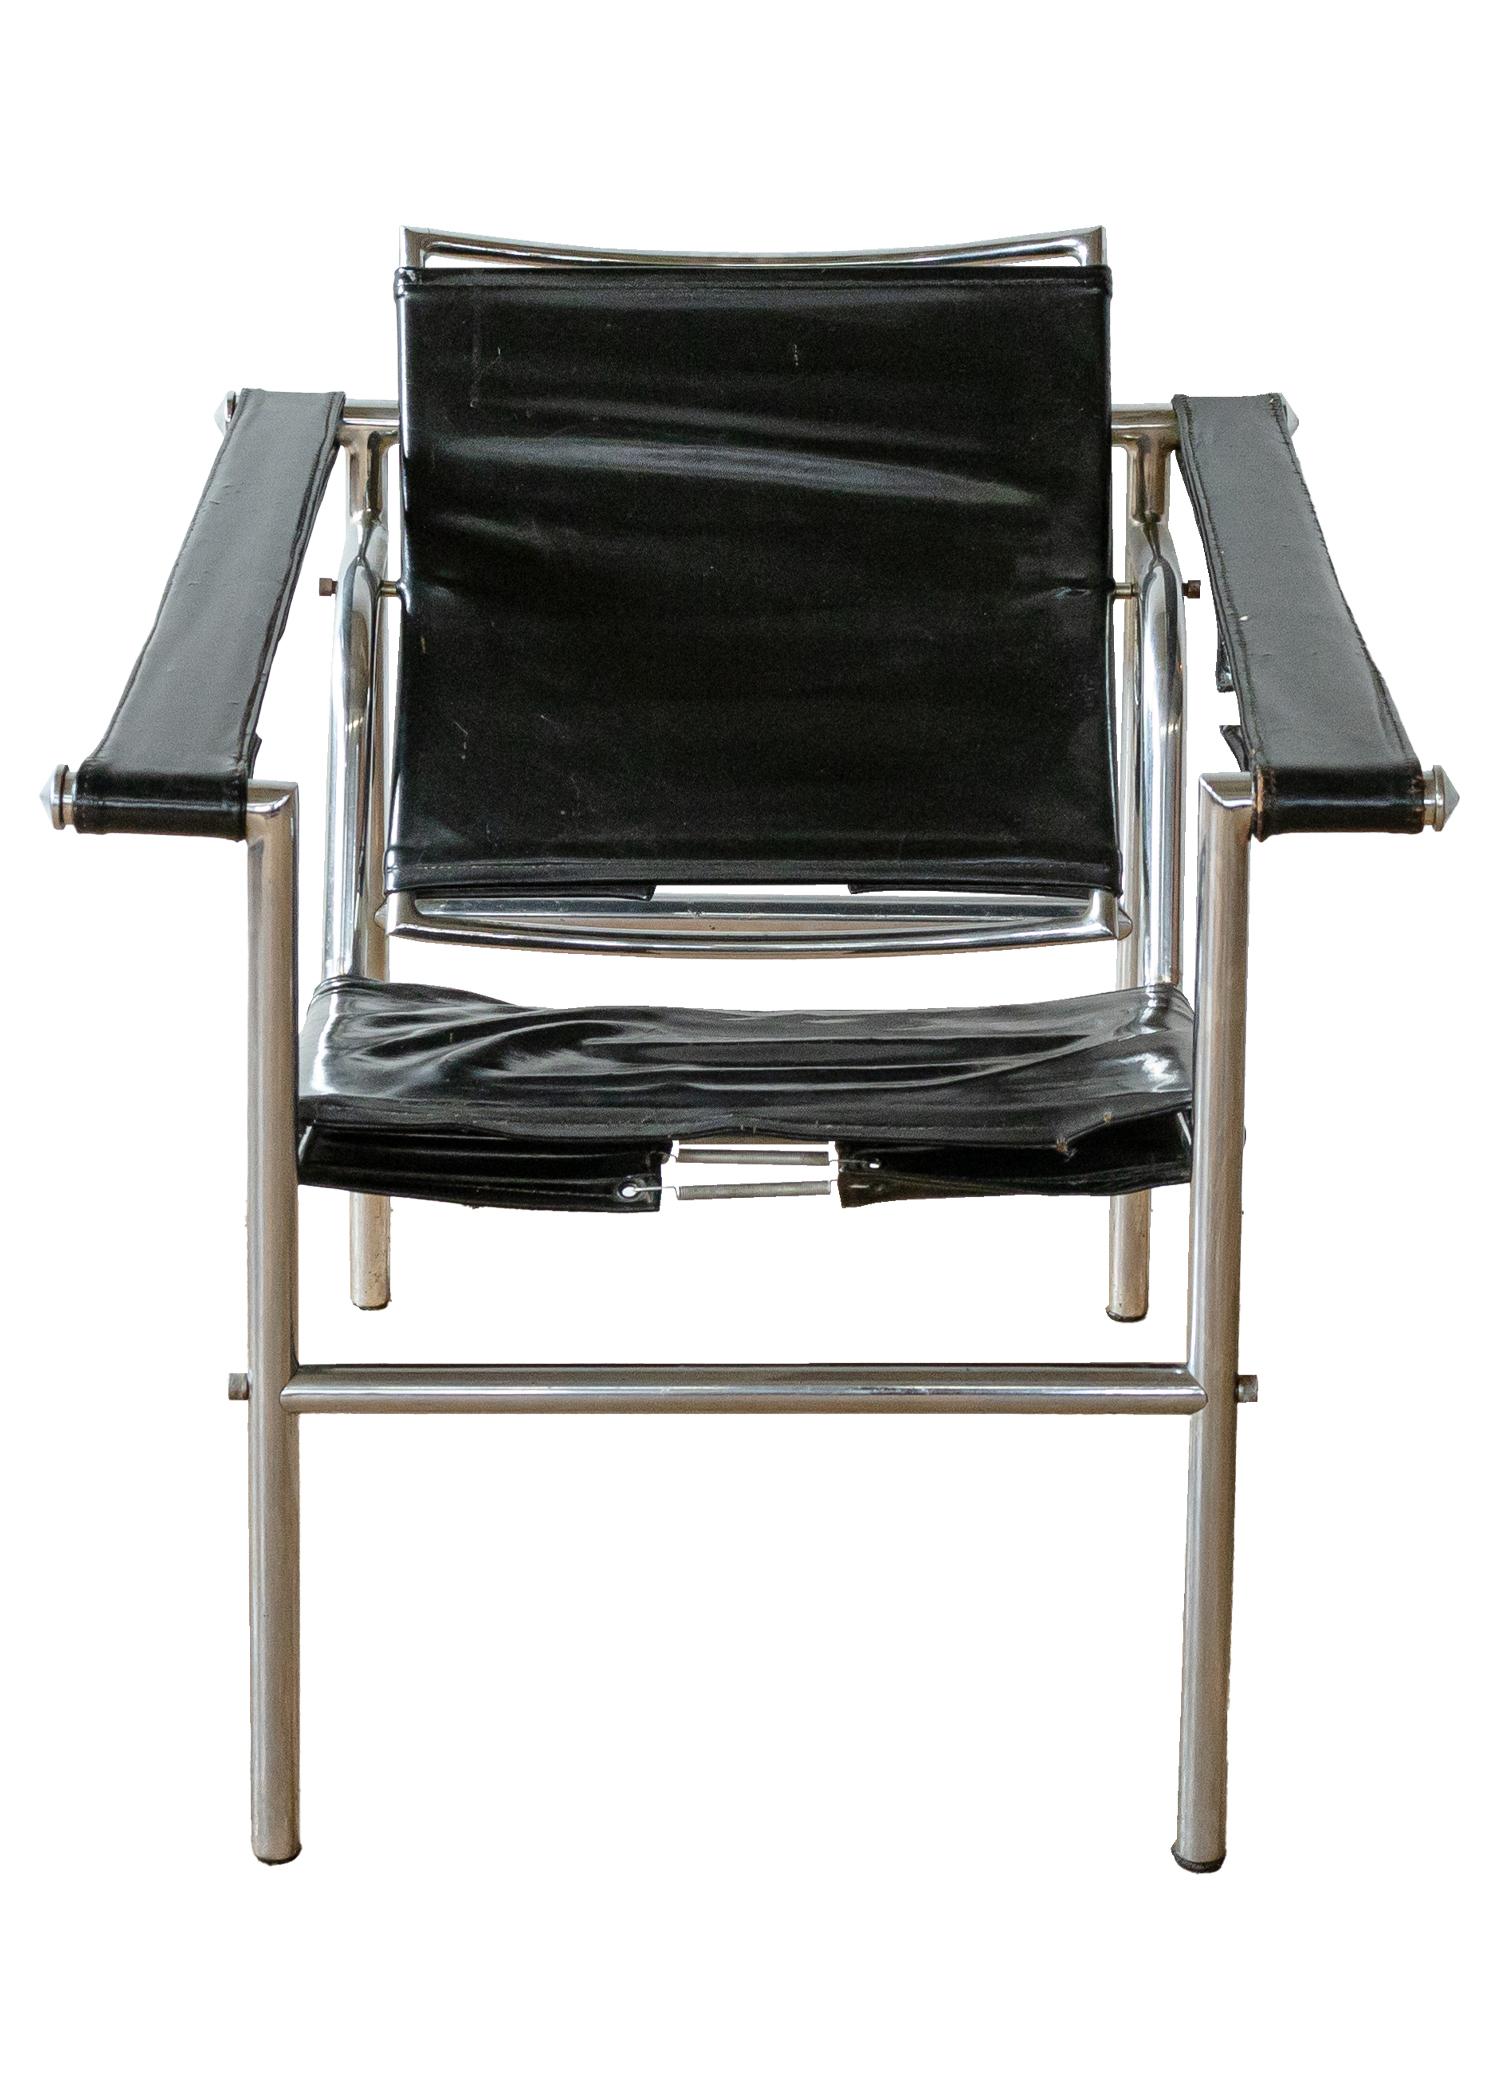 Un fauteuil Le Corbusier vintage original. Cette chaise Le Corbusier d'époque a un design intemporel et une belle silhouette. Bien que cette chaise soit en bon état vintage, elle montre sa patine dans le cuir sur les bras et l'assise de la chaise.